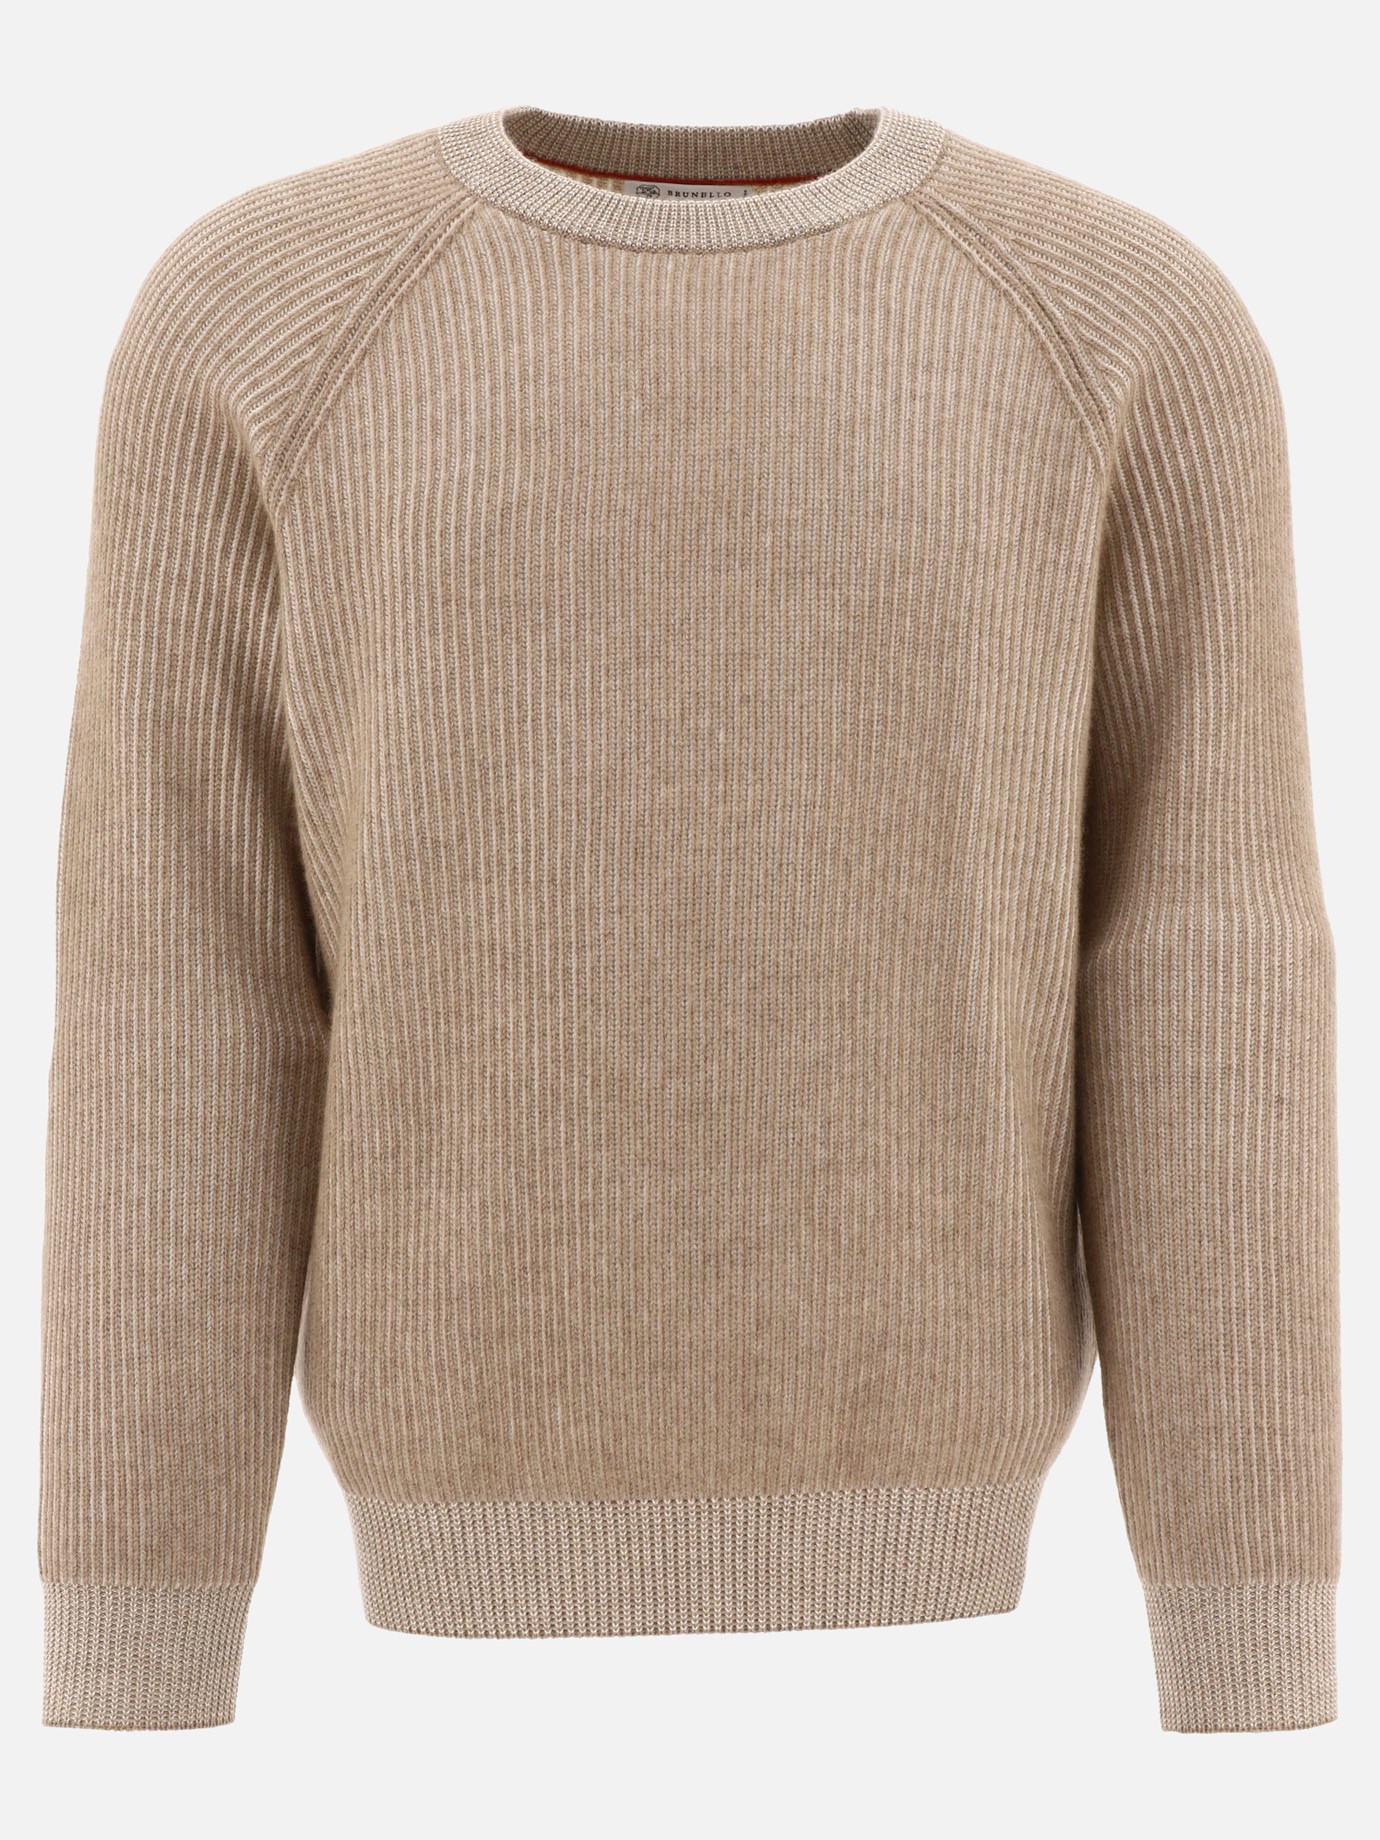 Vanisé sweater with raglan sleeves